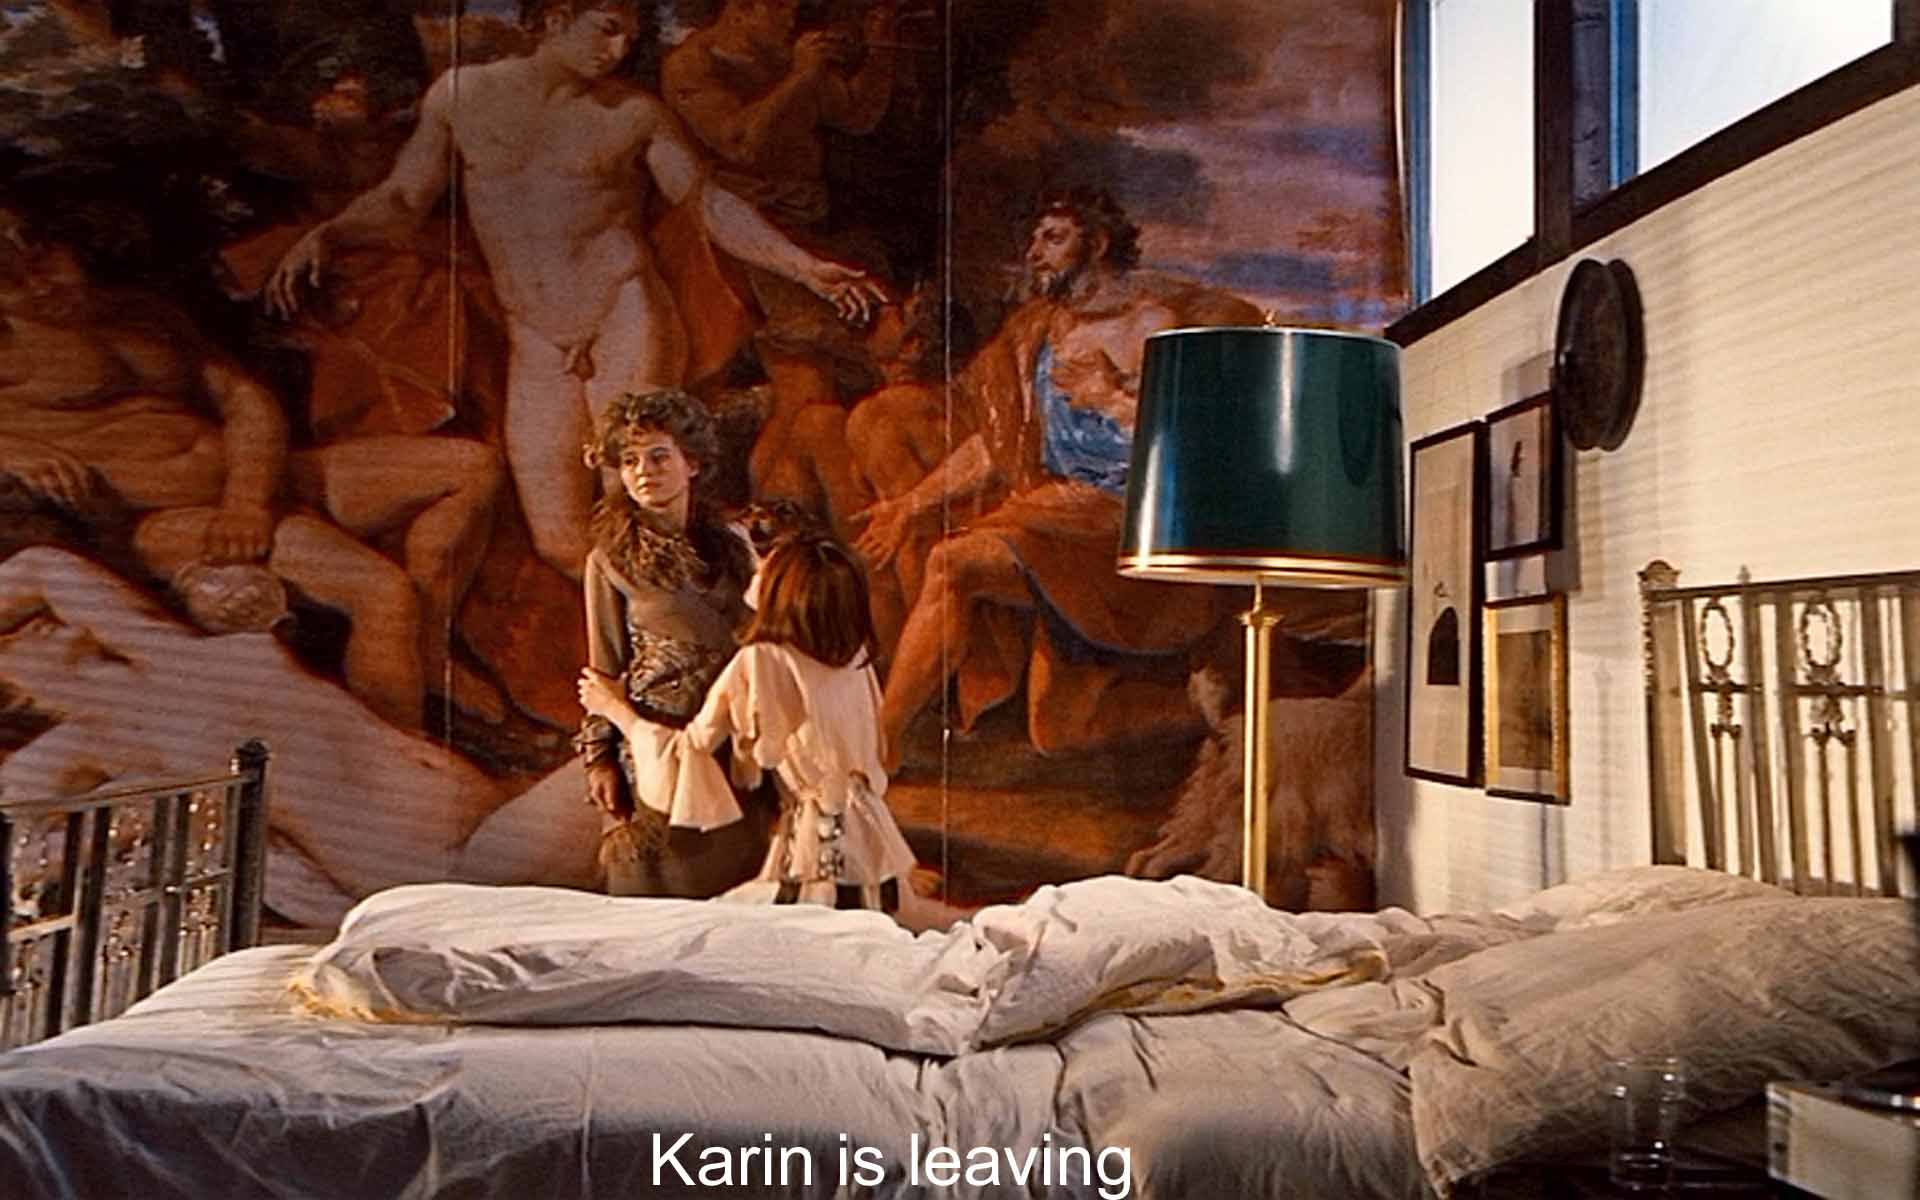 Karin is leaving